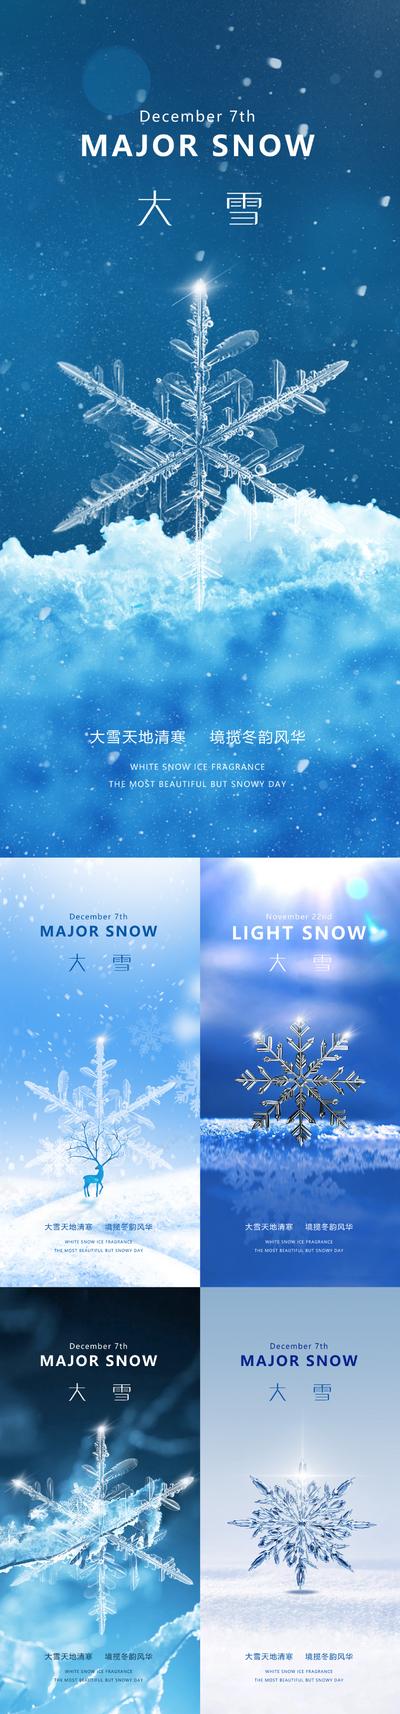 南门网 广告 海报 节气 大雪 质感 系列 冬天 雪花 下雪 金属 二十四节气 闪光 唯美 蓝色 冬季 小雪 品质 大气 简约